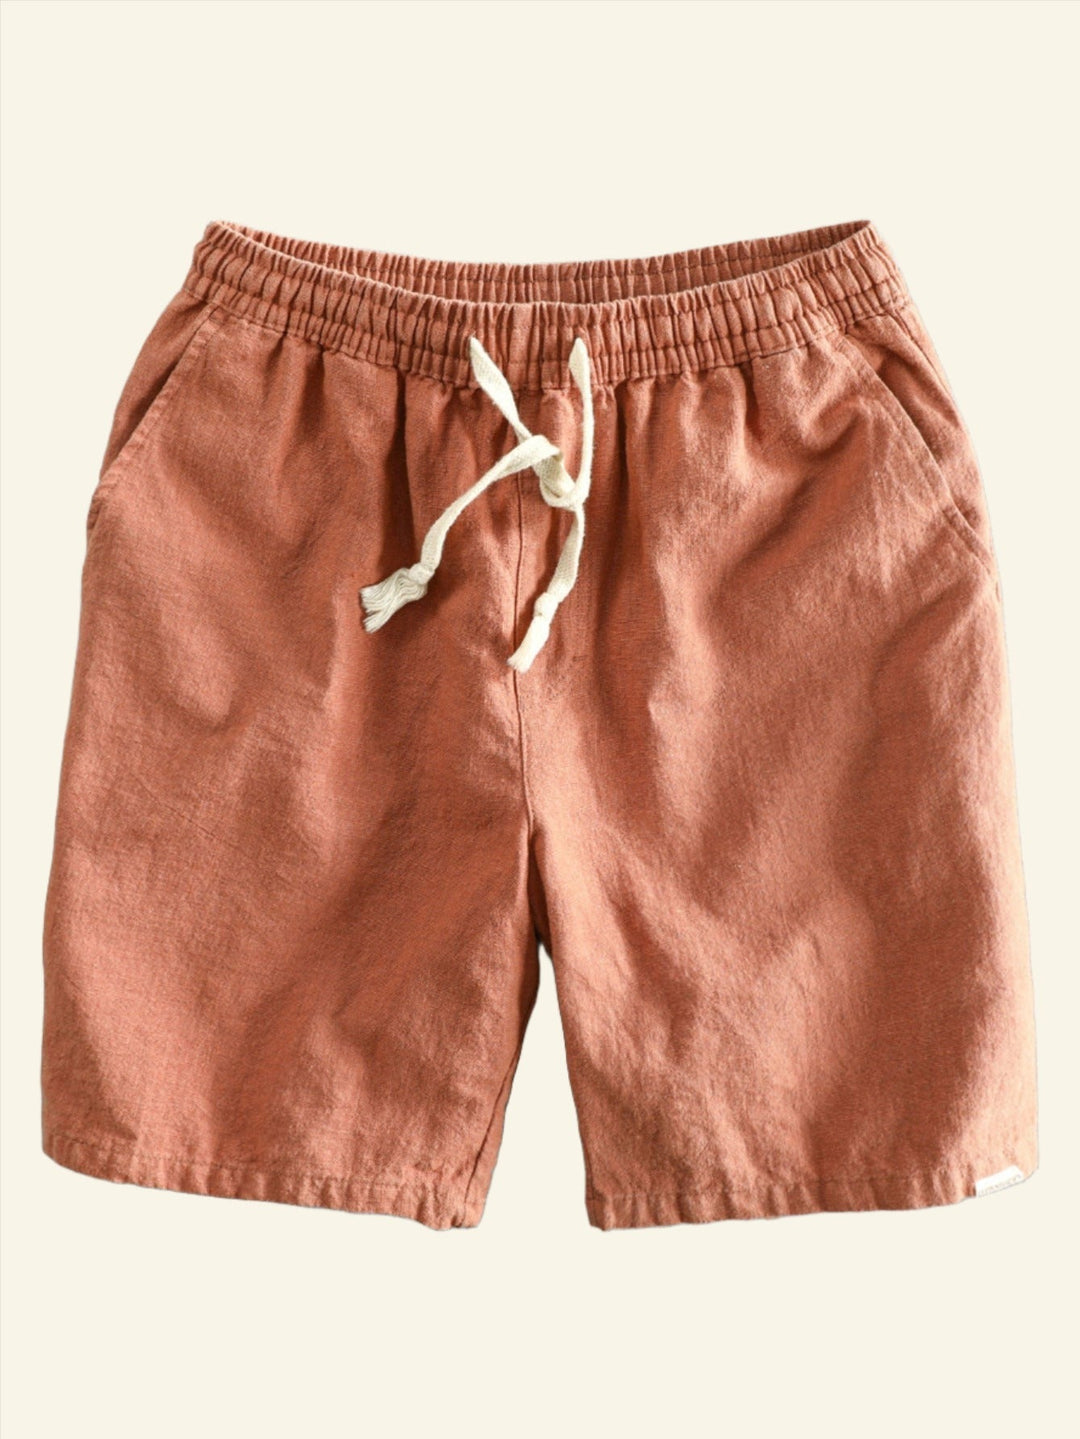 Lässige einfarbige Herren-Sommer-Shorts perfekt für den Strand